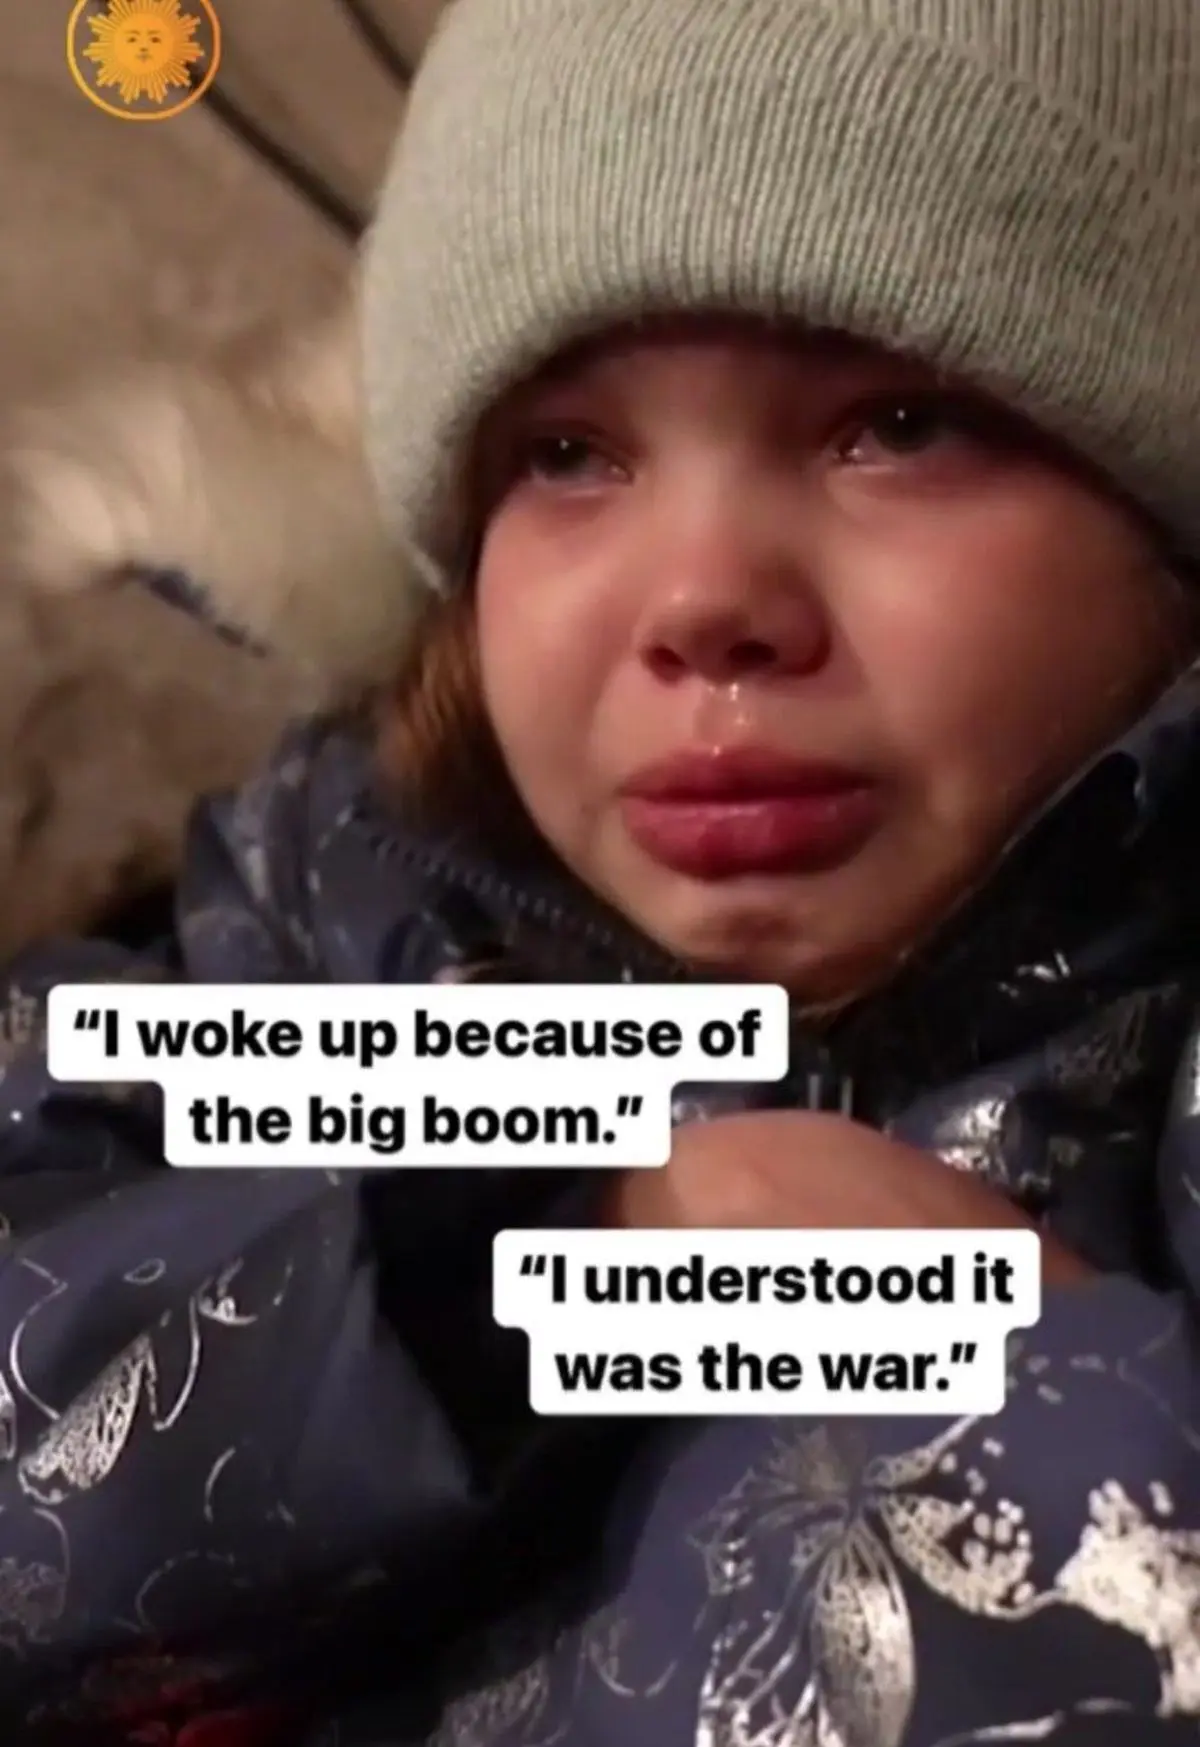 گریه دلخراش کودک اوکراینی: با صدای بمب بیدار شدم!+ویدئو